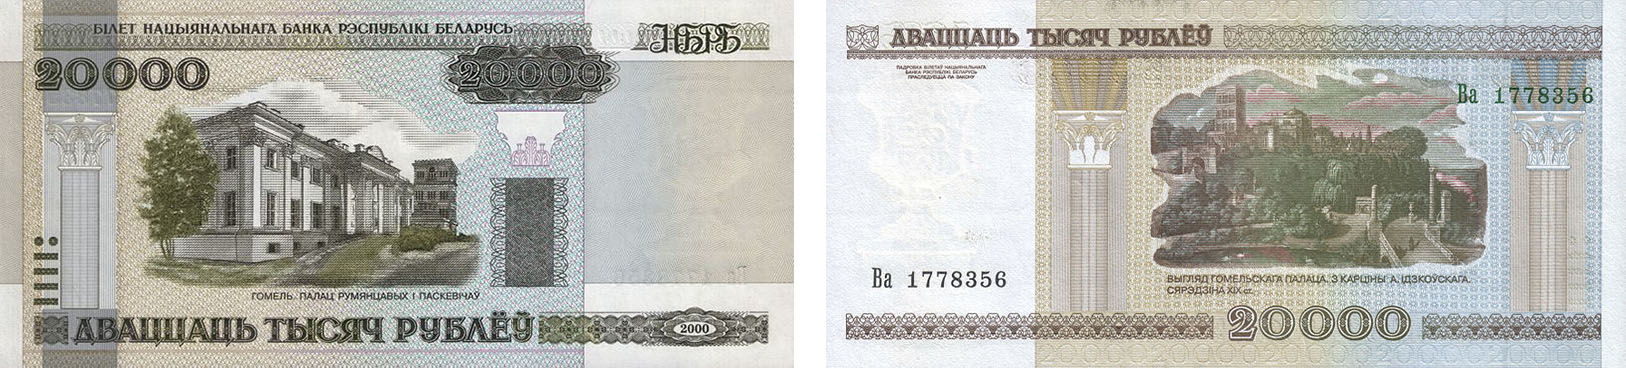 20000 рублей 2000 года